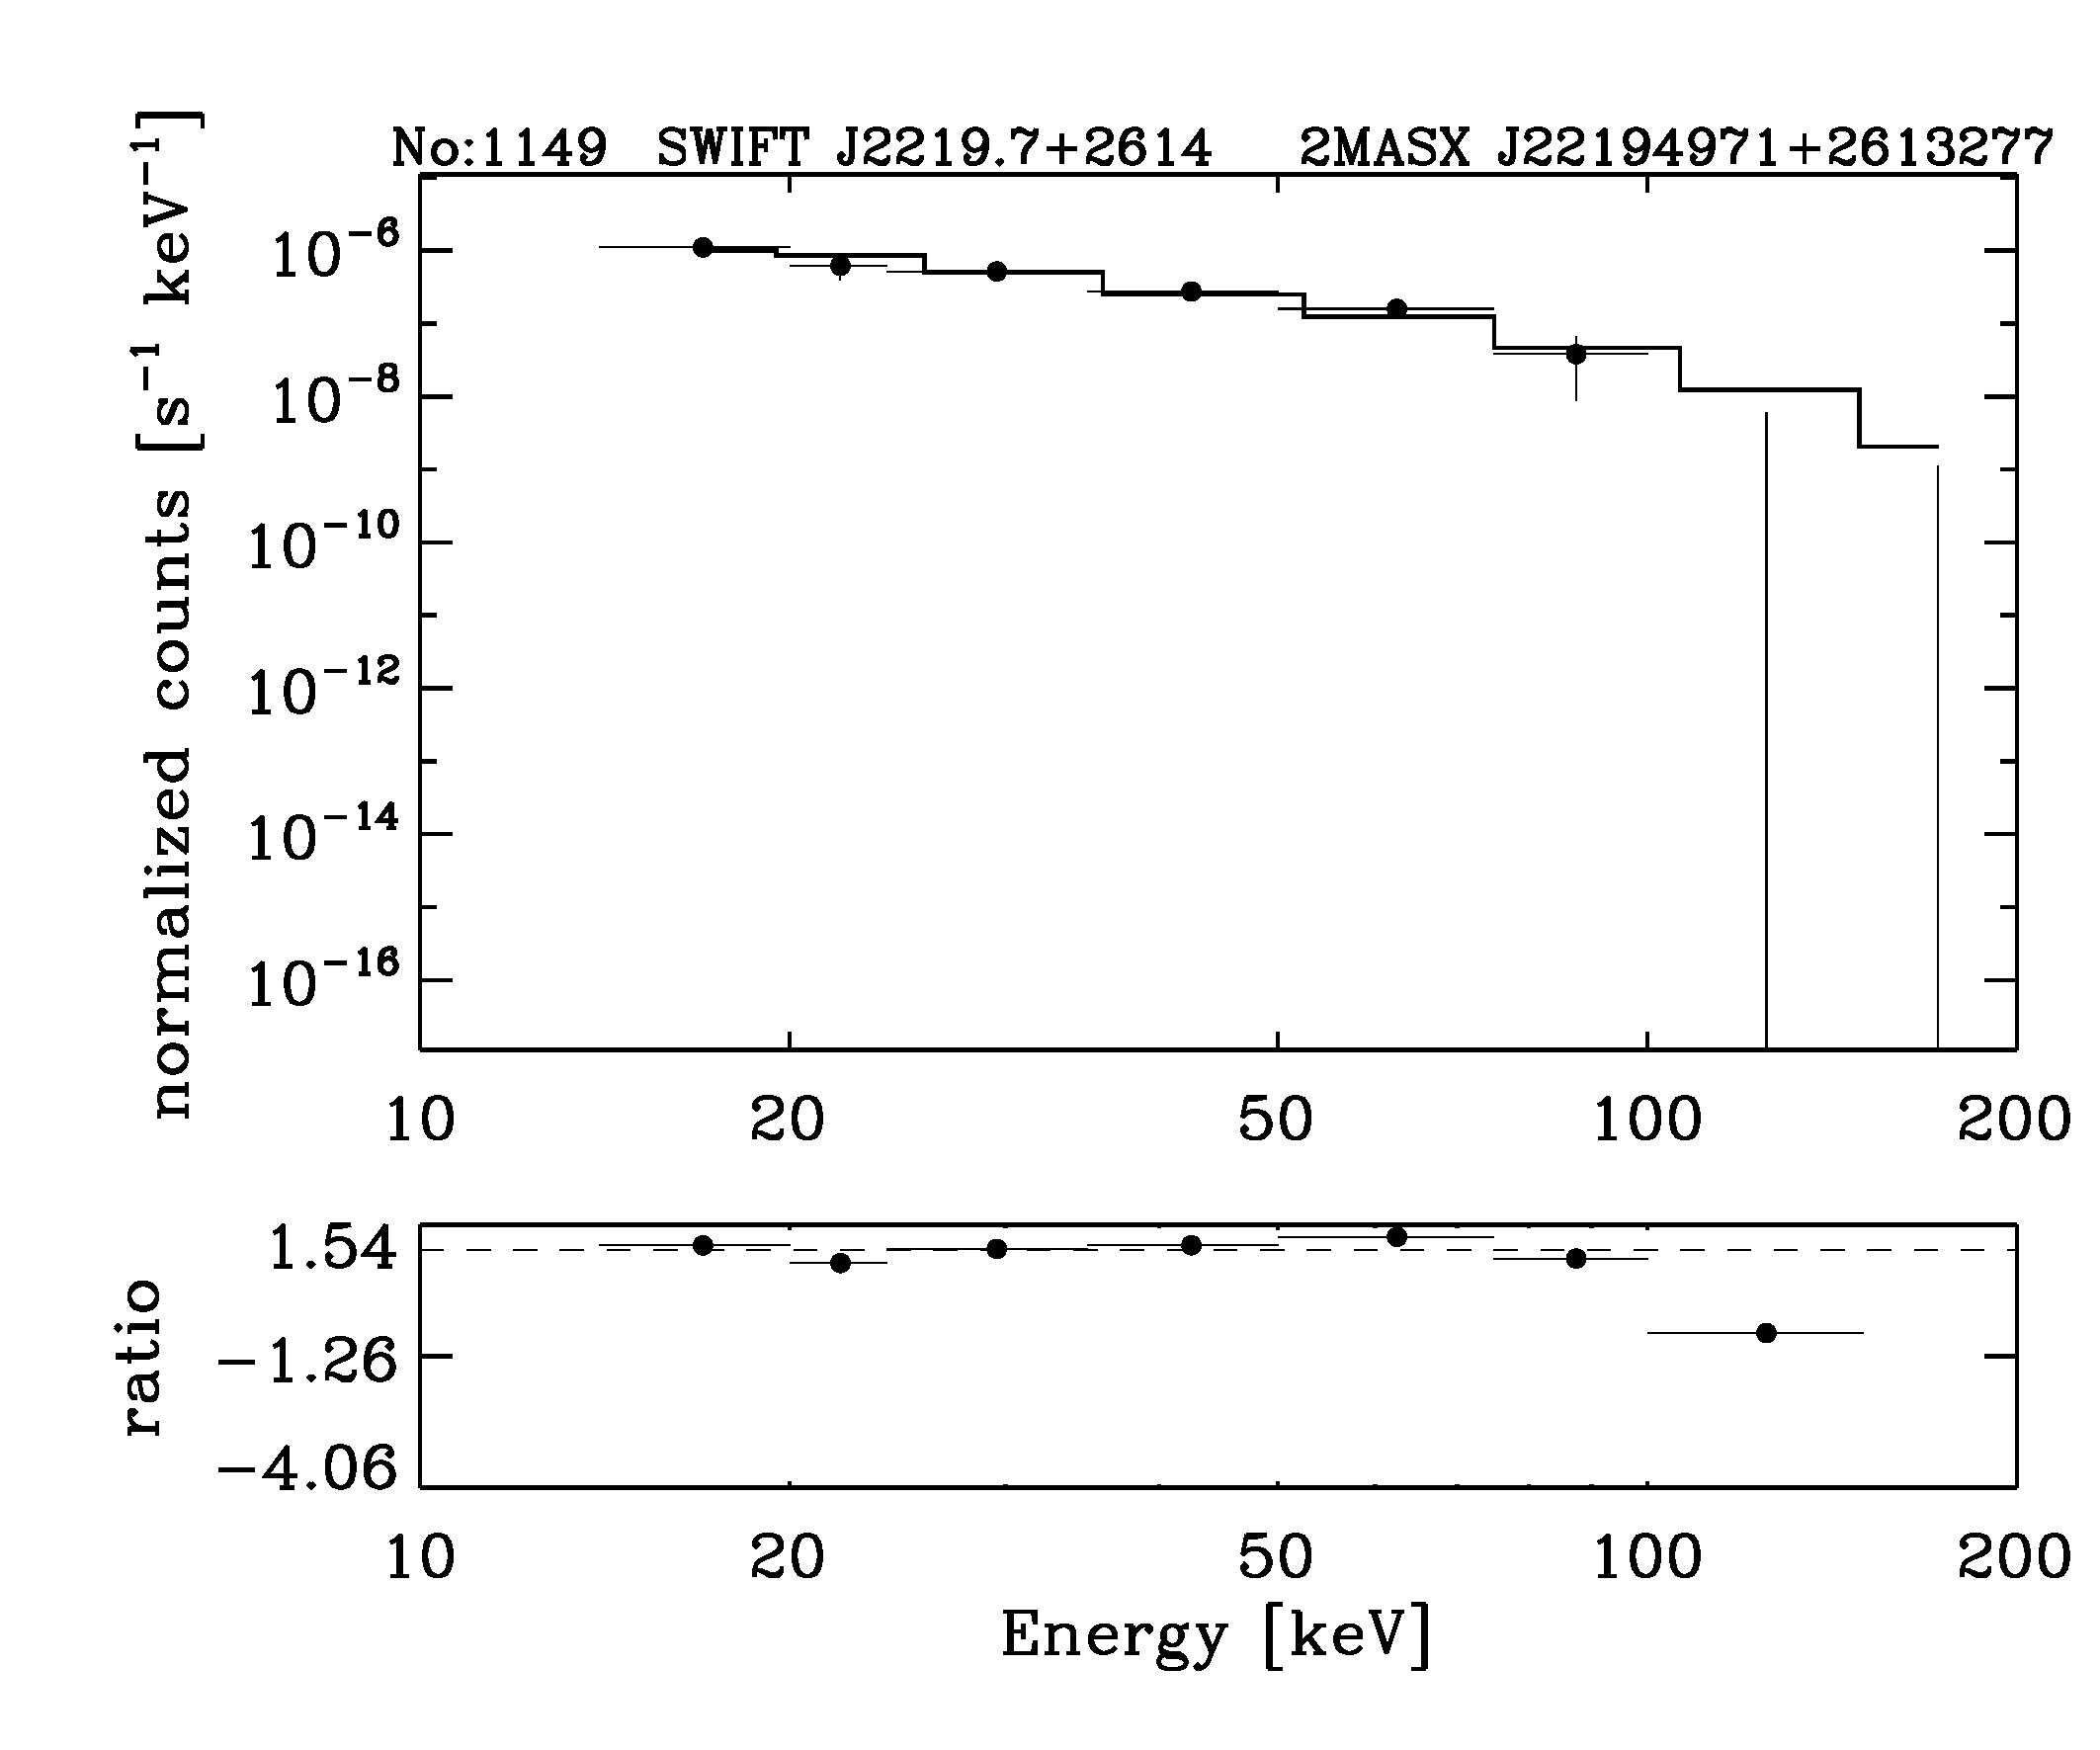 BAT Spectrum for SWIFT J2219.7+2614